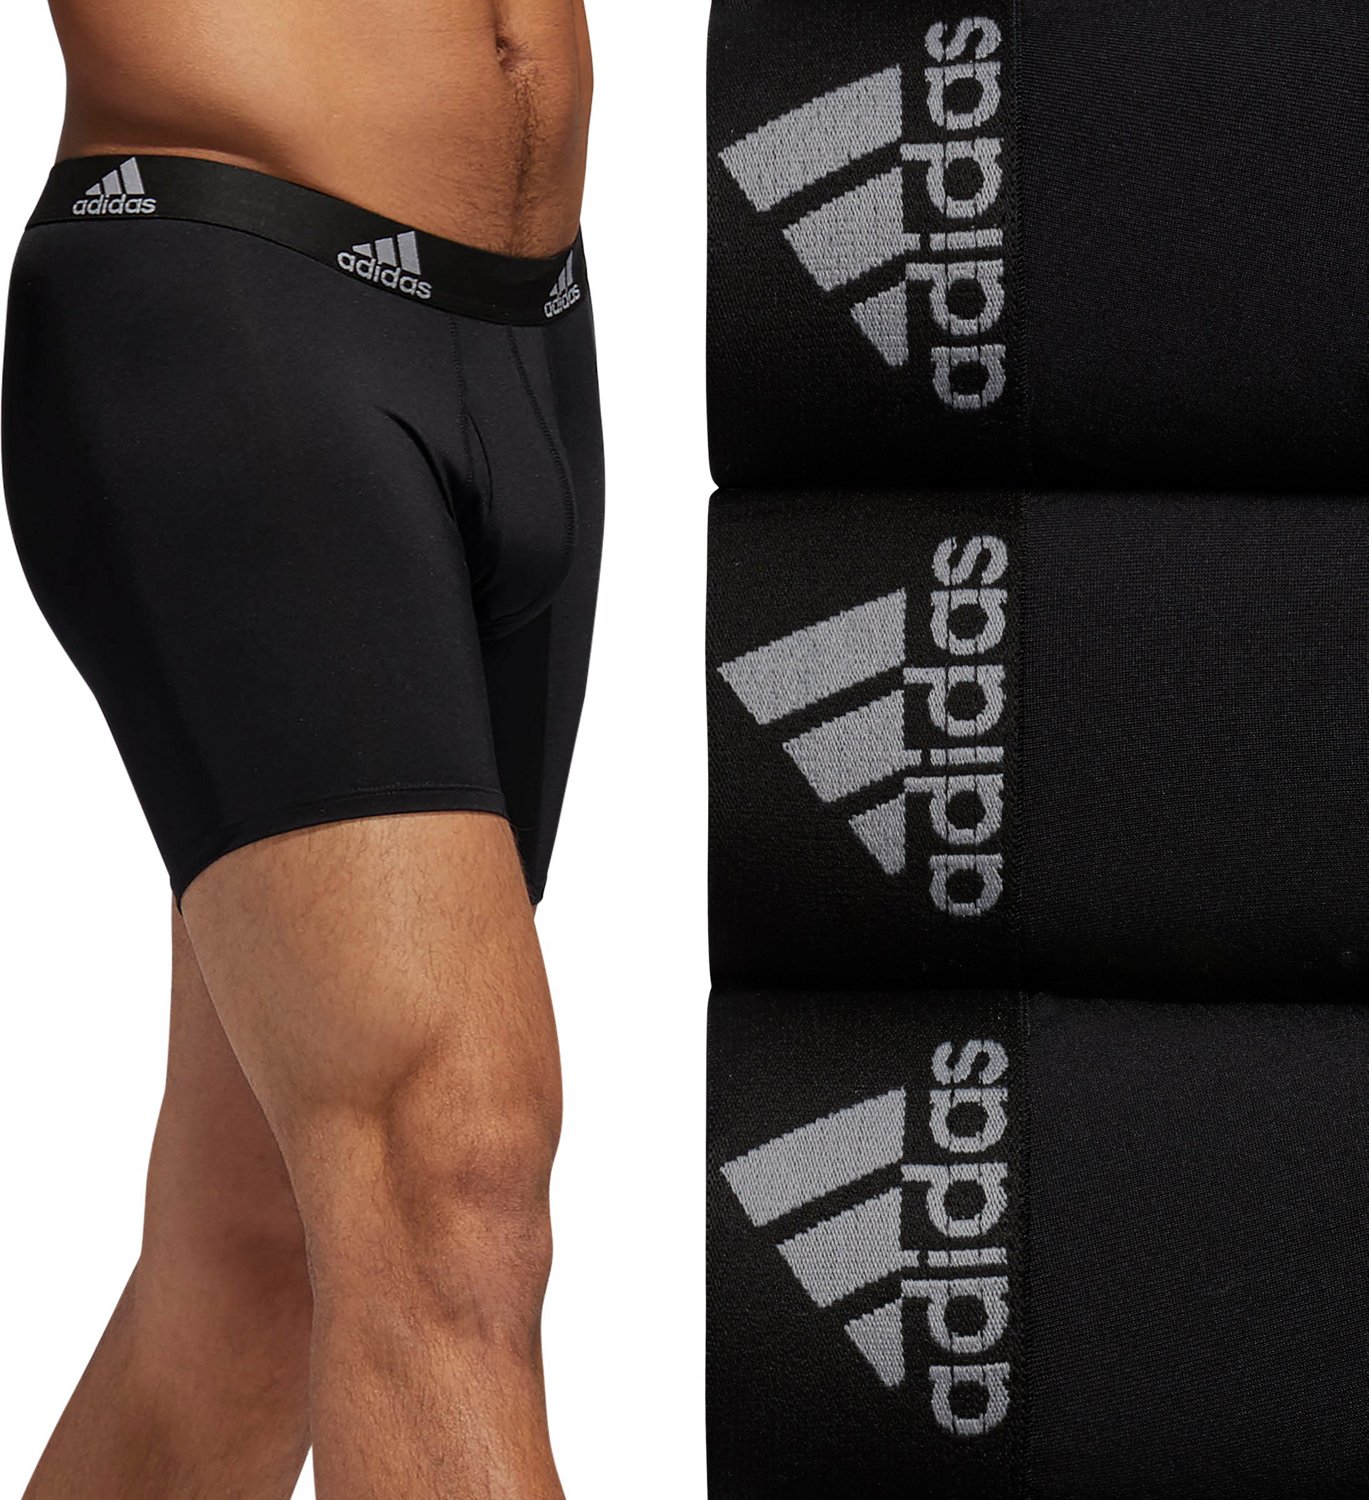 adidas Sport Performance Mesh Boxer Brief Underwear 3-Pack (Black